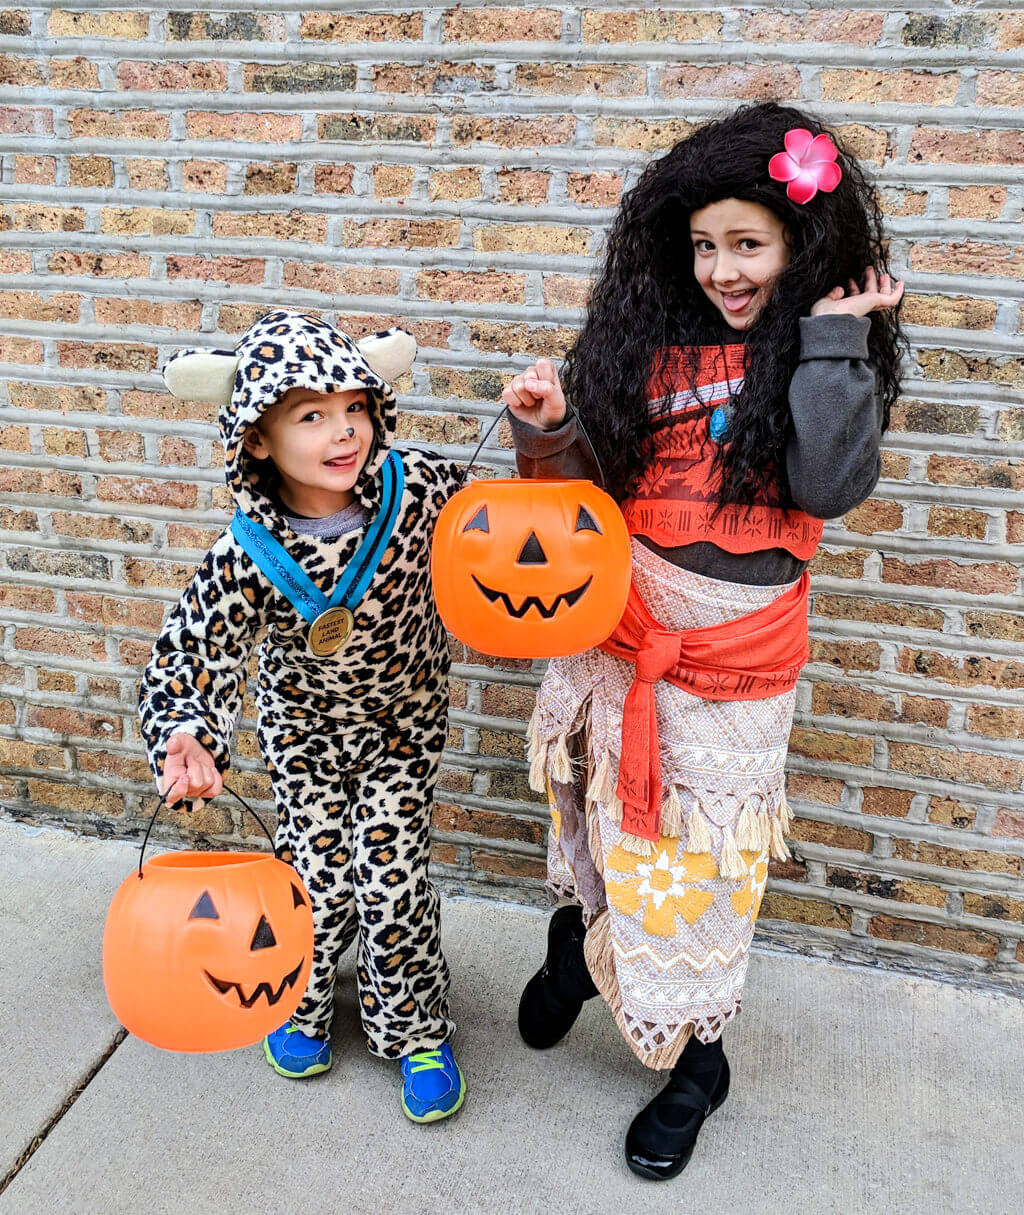 DIY Cheetah Costumes
 DIY Kids Cheetah Halloween Costume for Boys Merriment Design